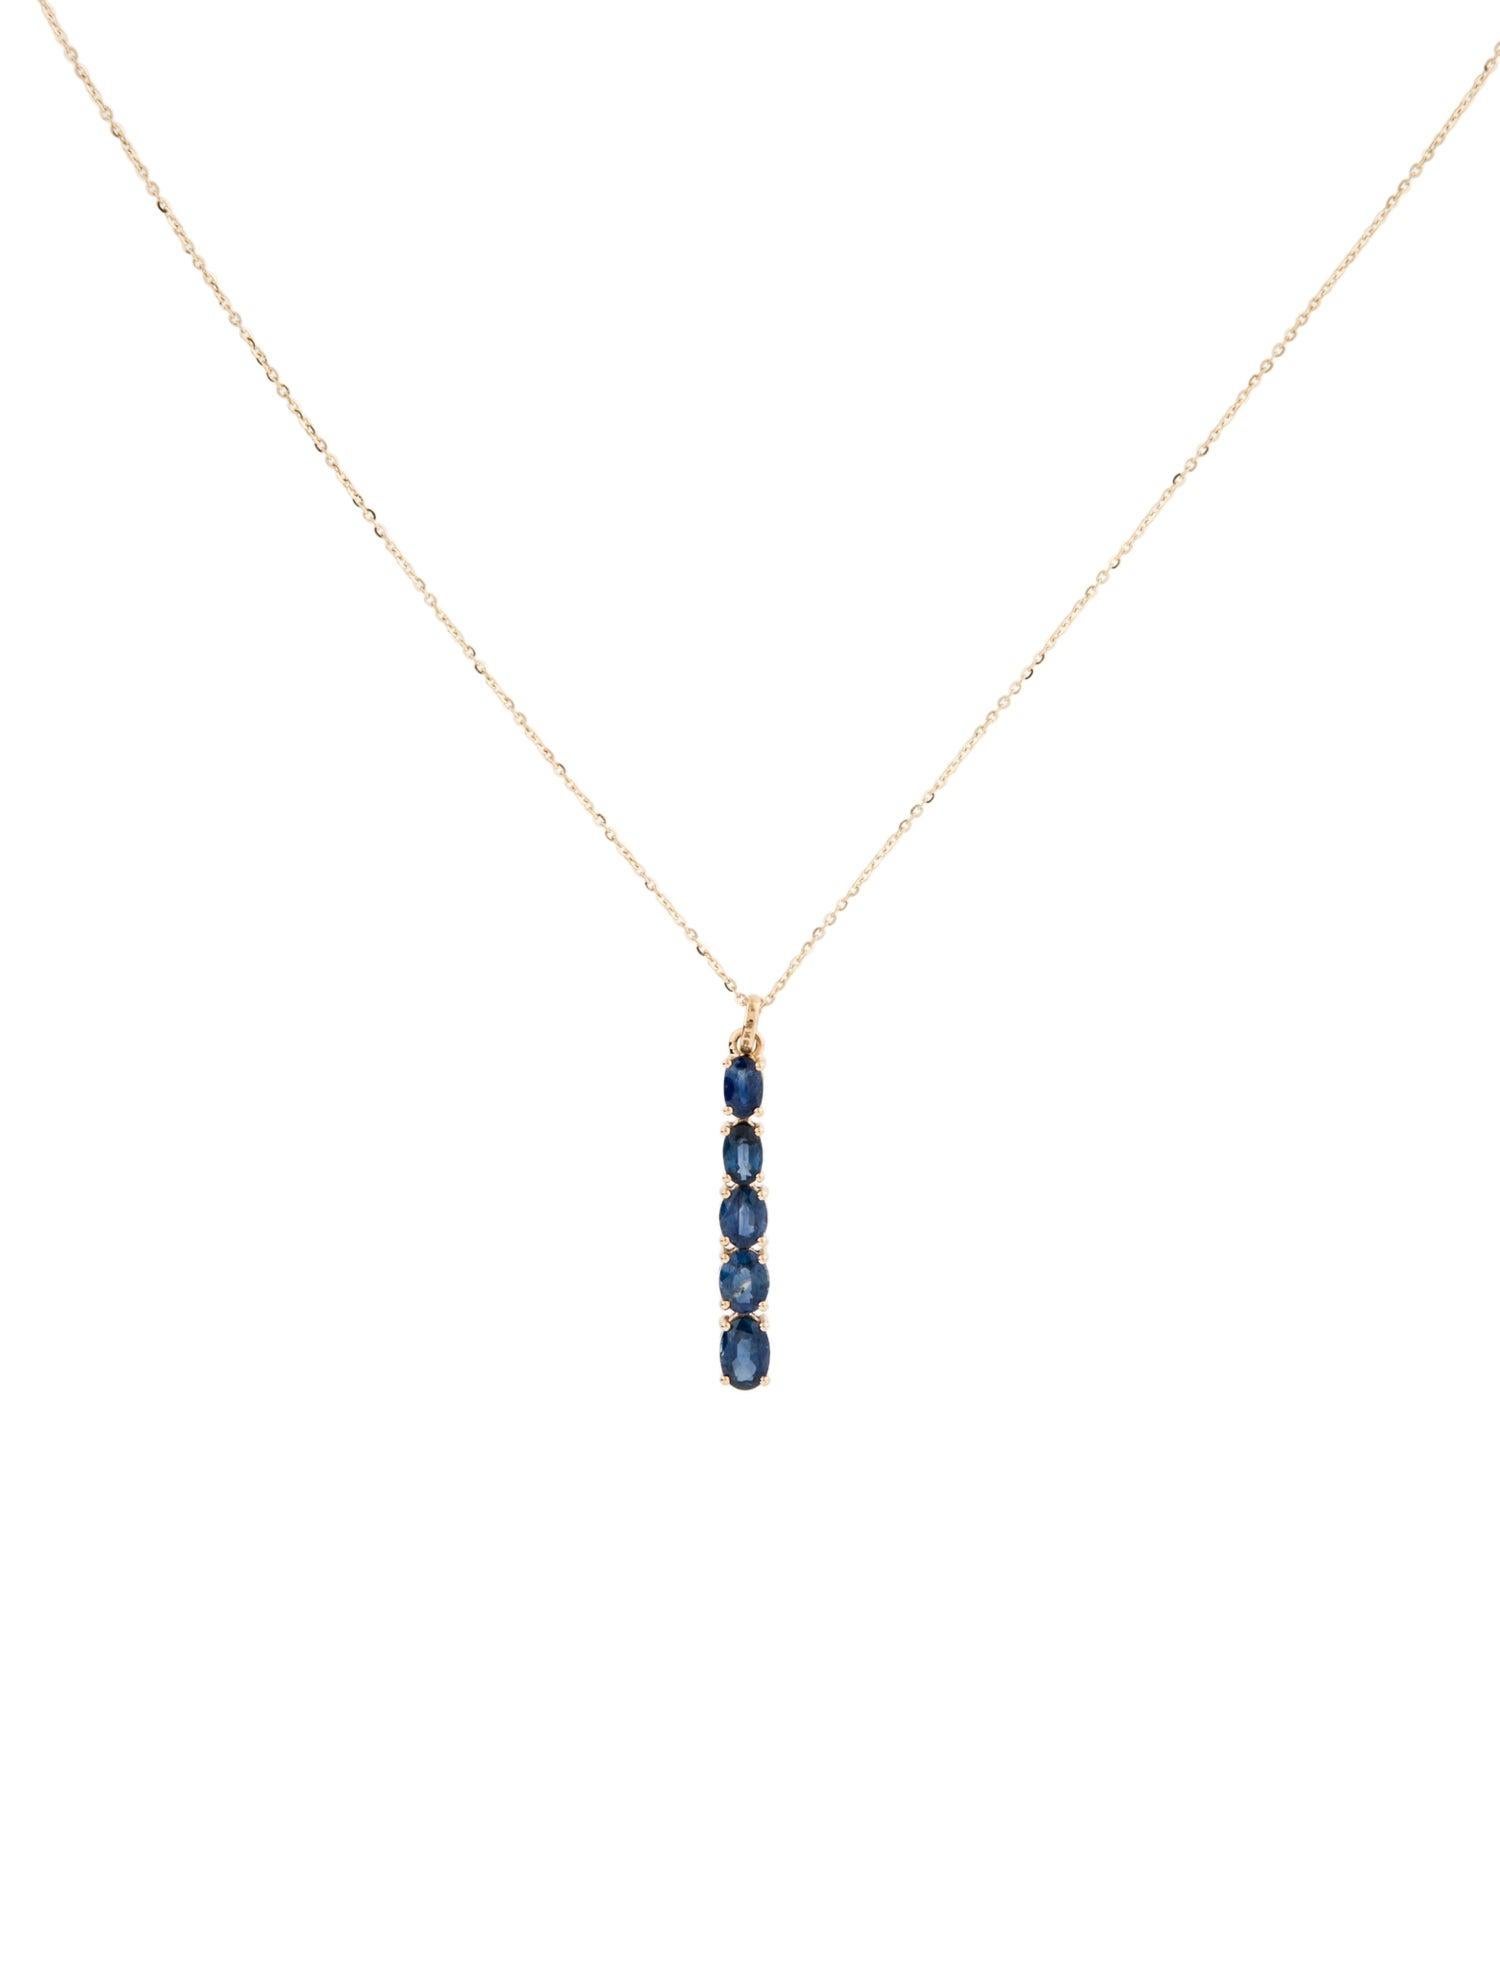 Brilliant Cut 14K 2.08ctw Sapphire Pendant Necklace: Elegant Luxury Statement Piece, Timeless For Sale